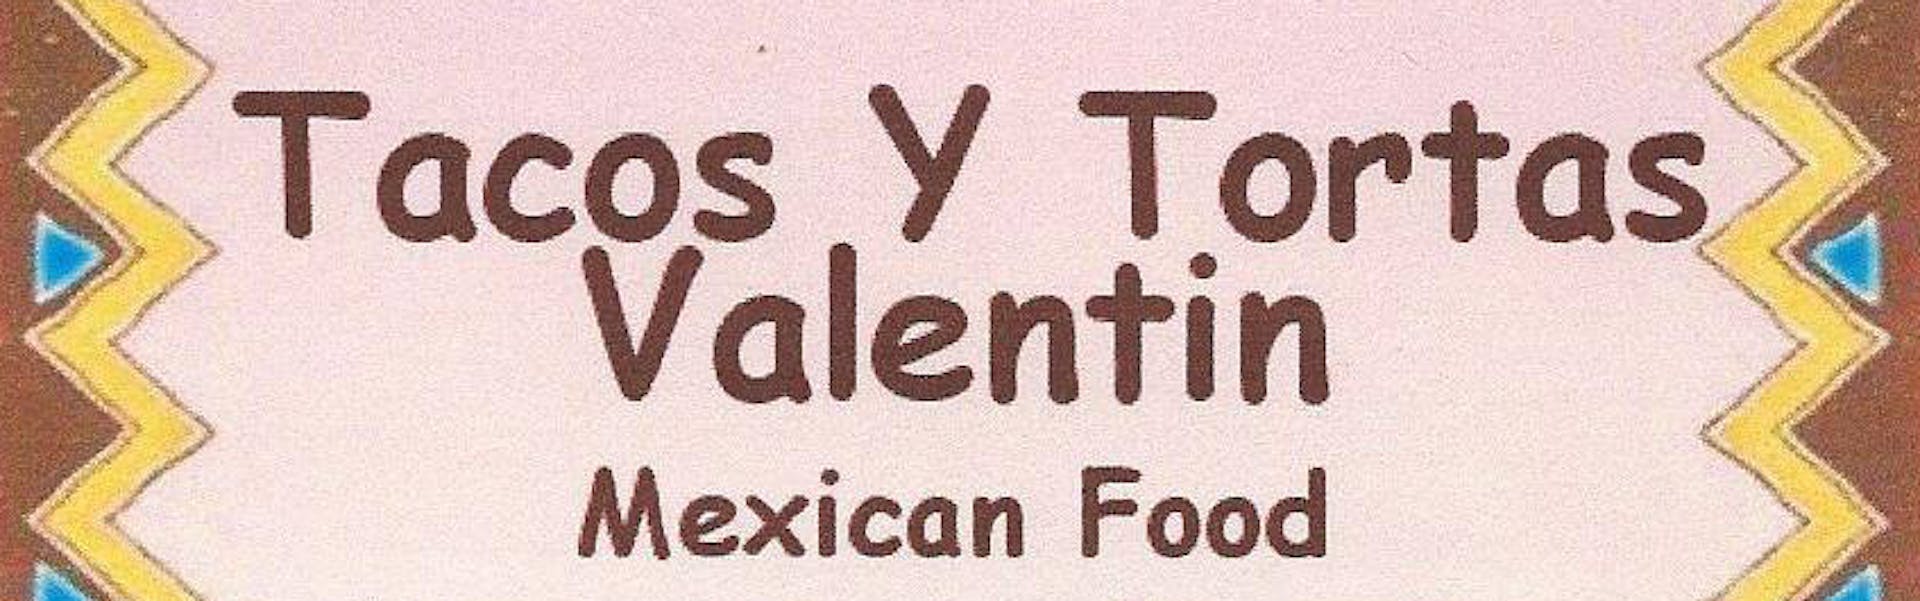 Tacos y Tortas Valentin